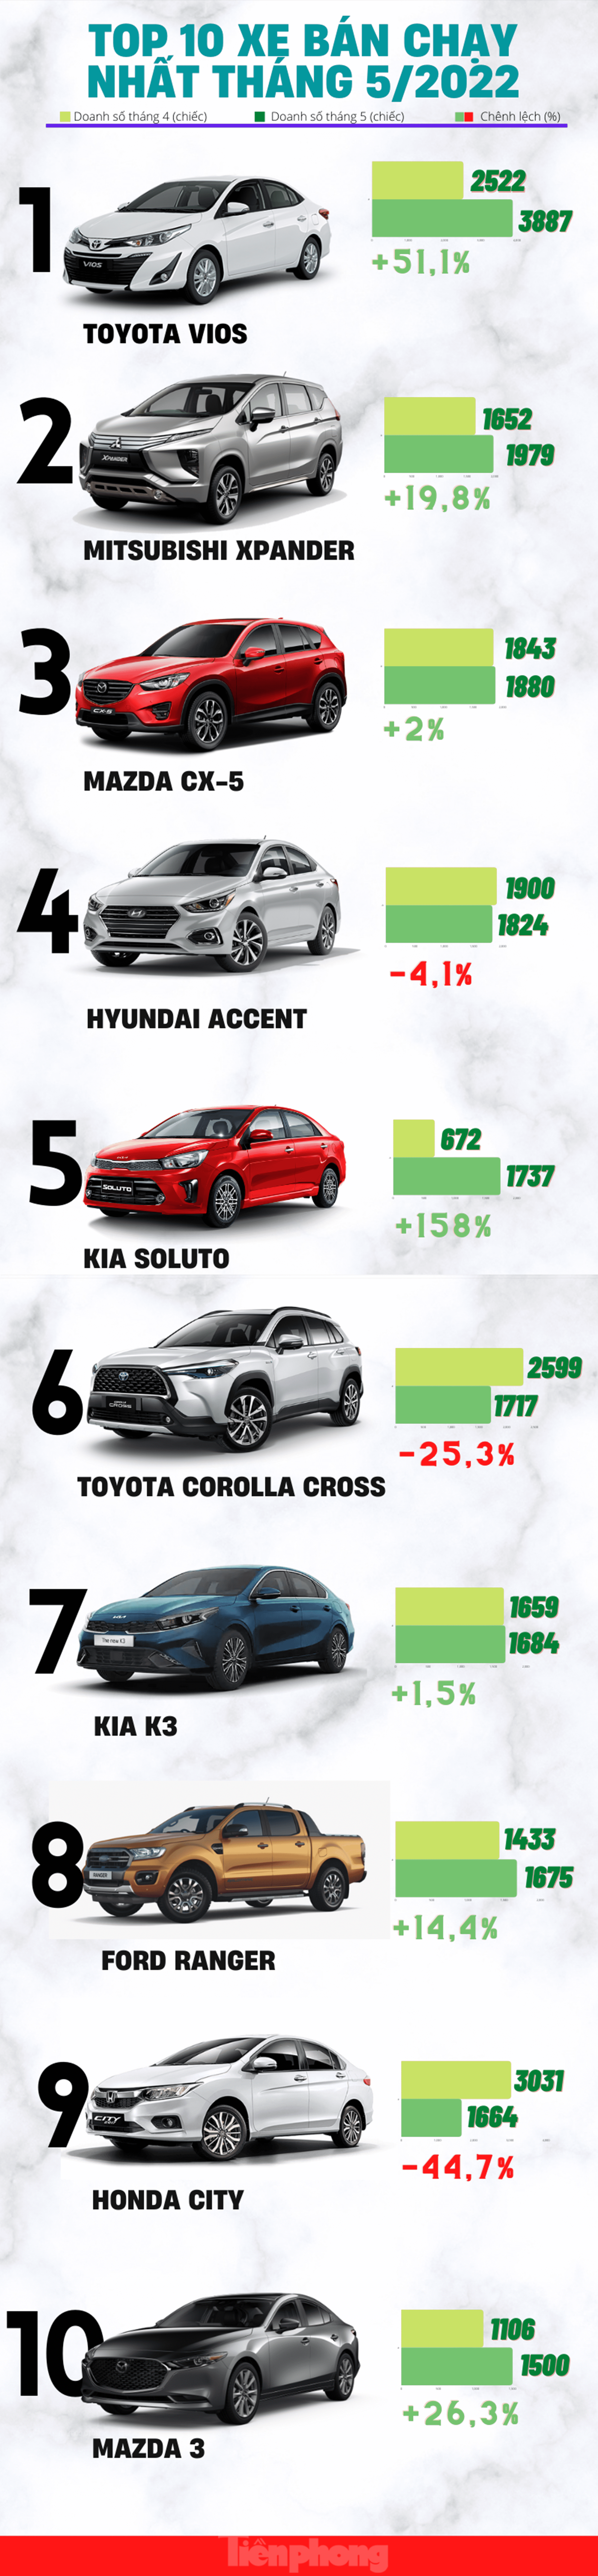 Top 10 ô tô ăn khách nhất tháng 5 tại Việt Nam - Ảnh 2.